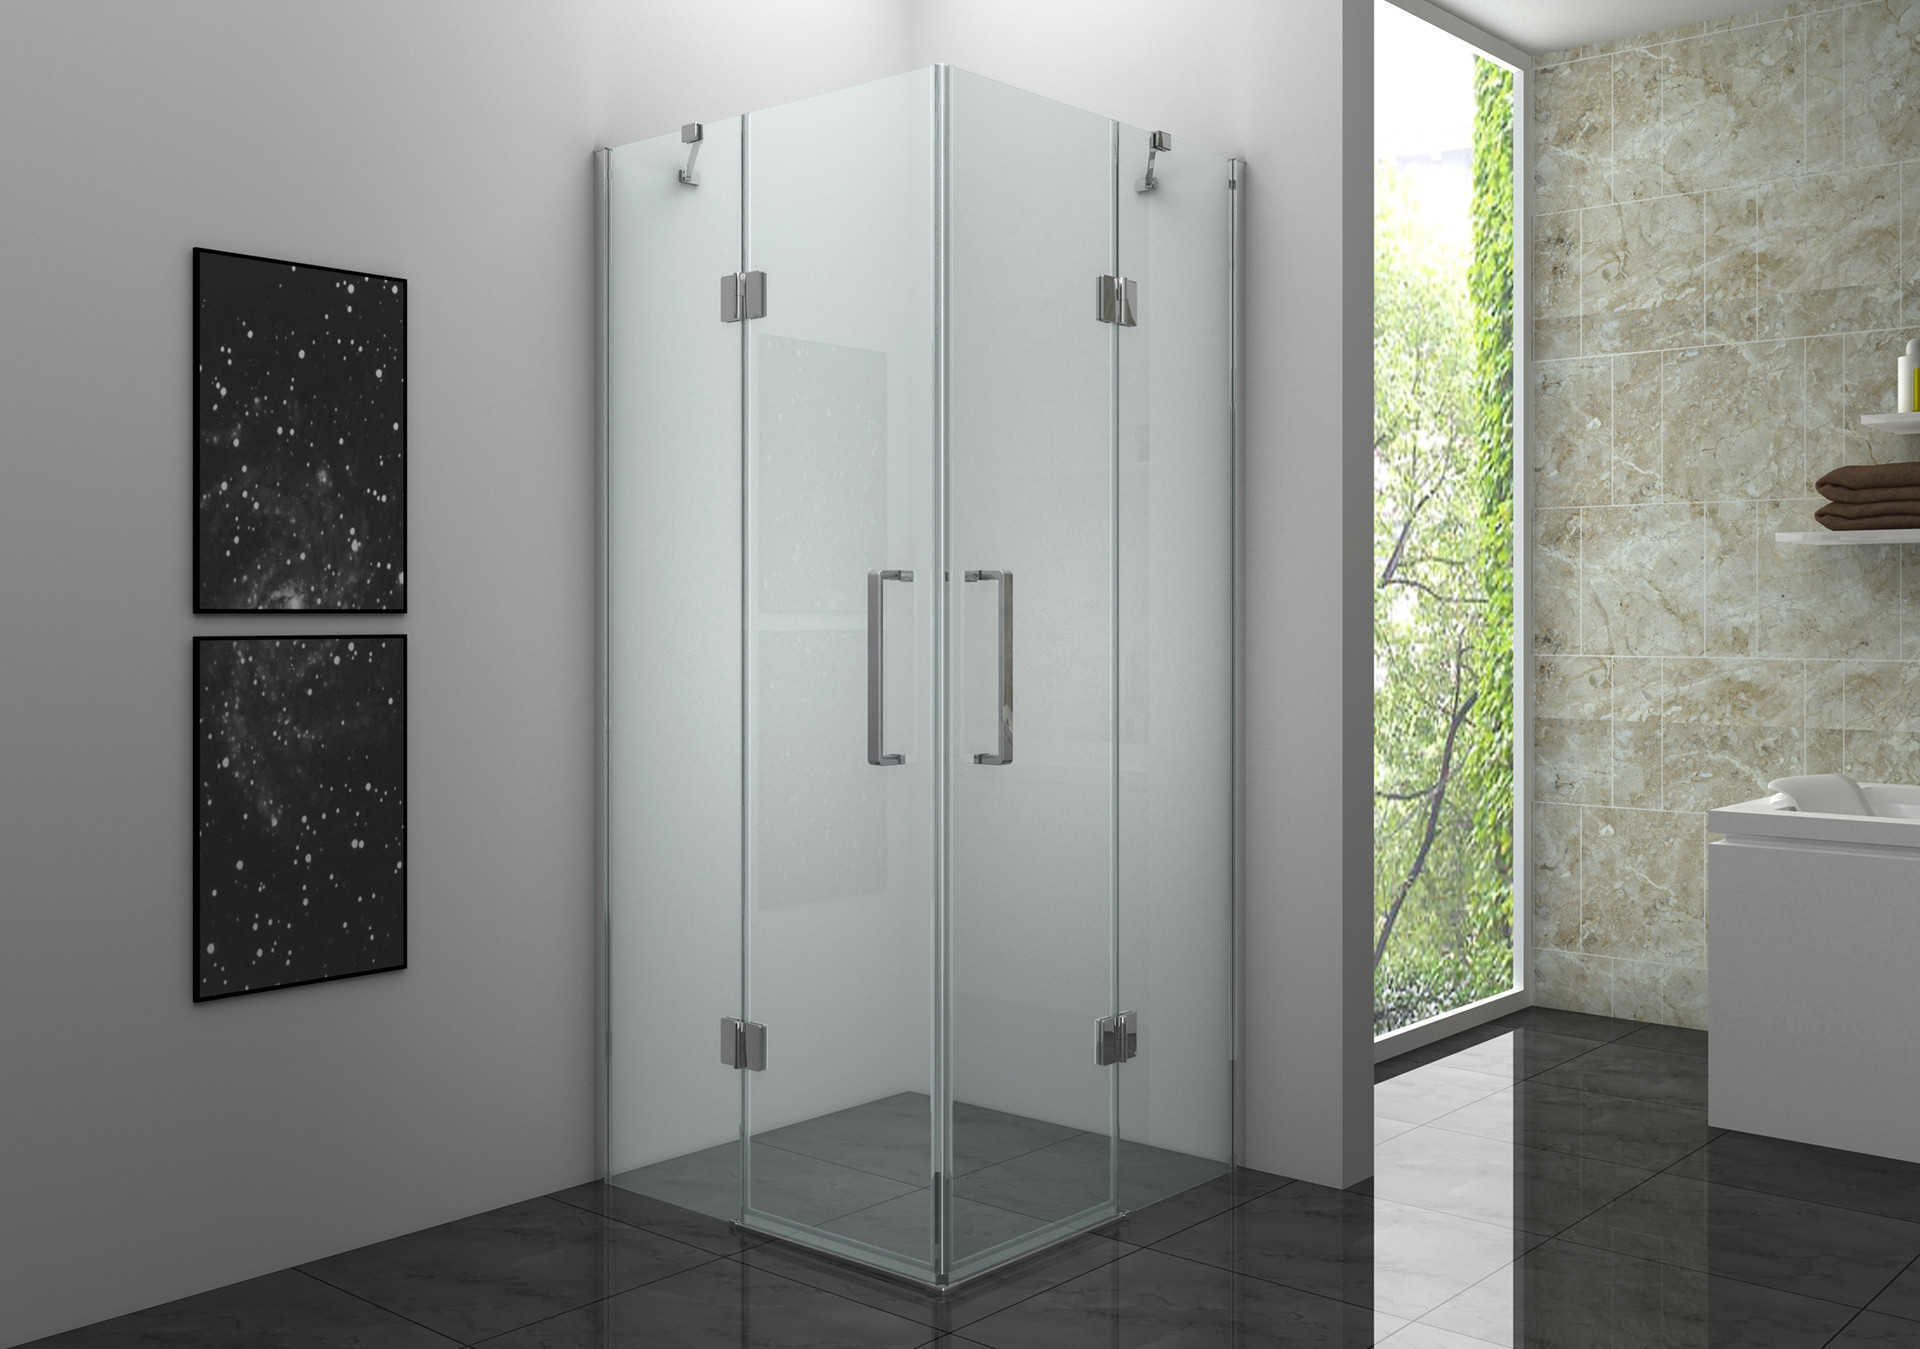 Quelle est l'épaisseur appropriée du verre de la salle de douche ?